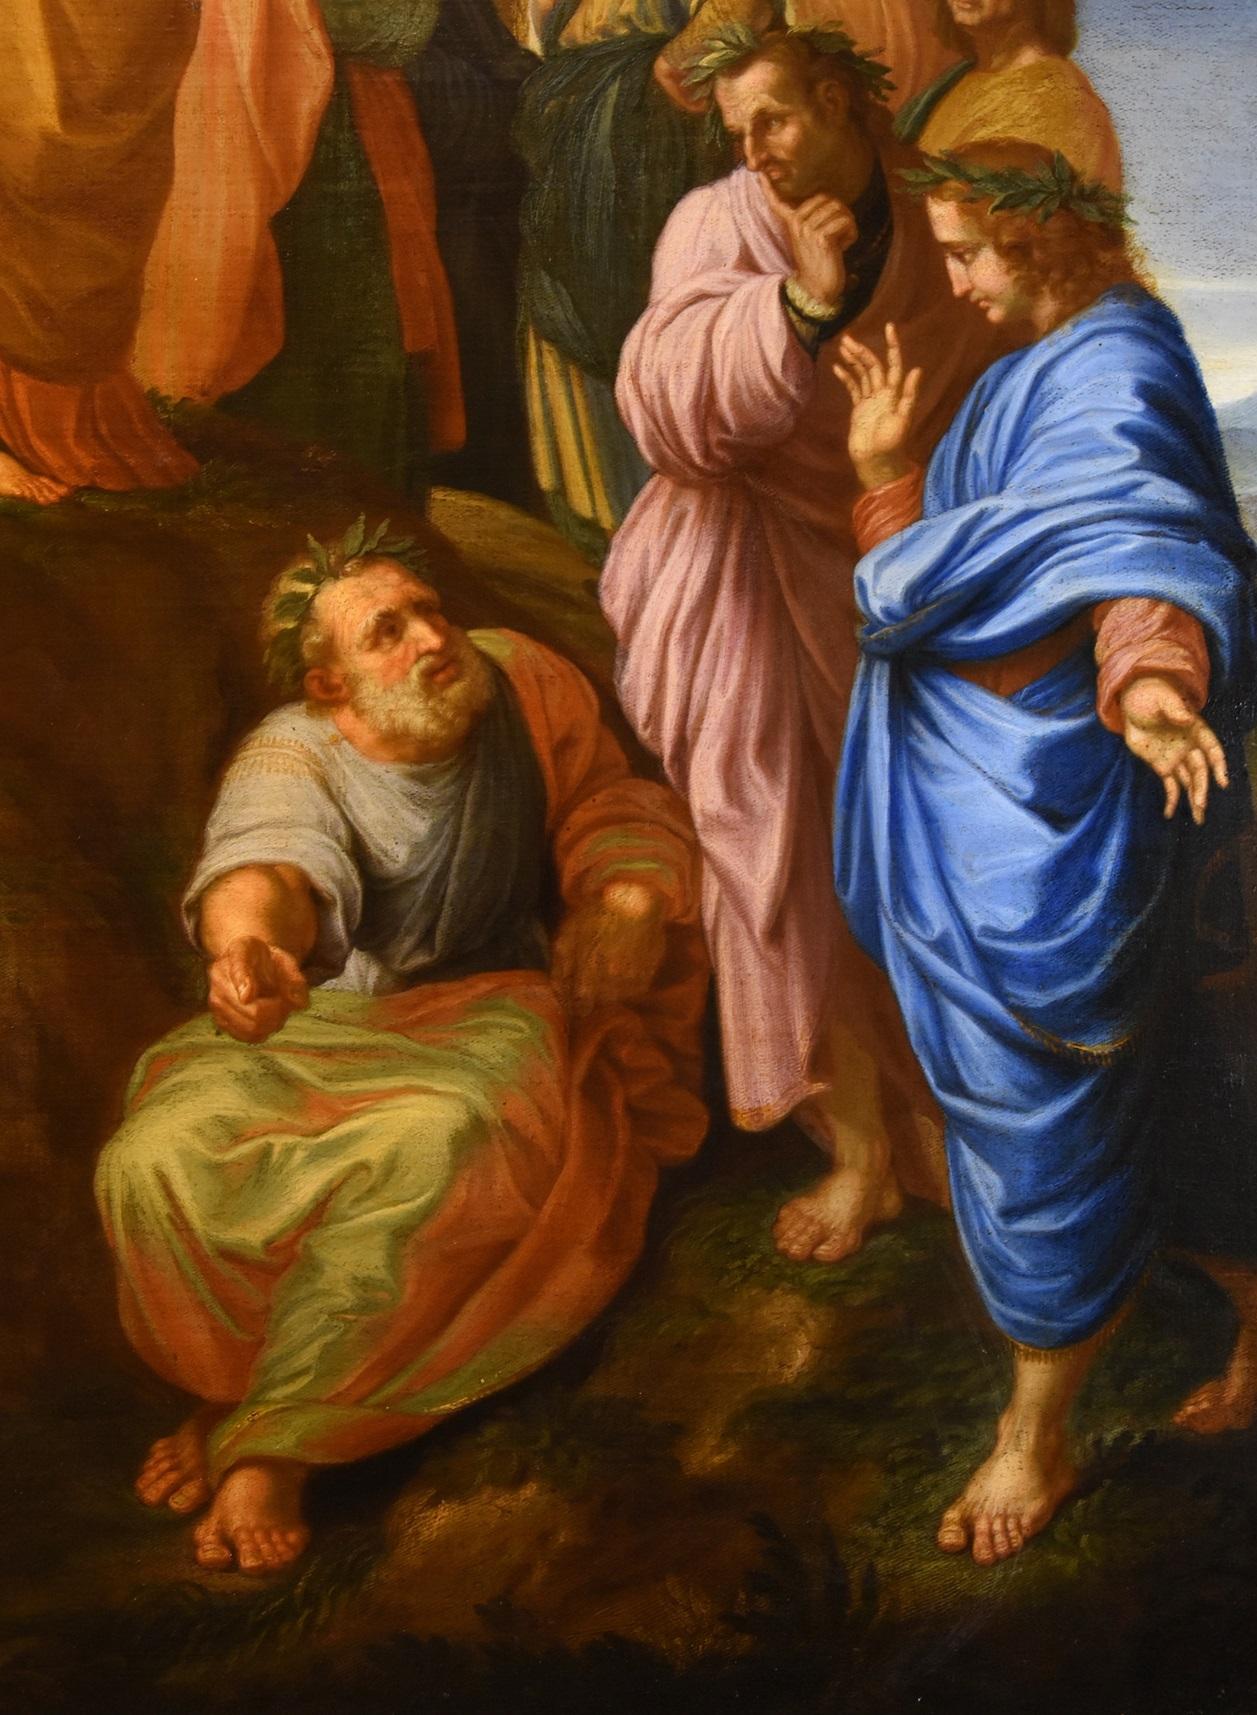 d'après RAFFAELLO SANZIO (Urbino, 1483 - Rome, 1520), 
Le Parnasse avec Apollo, les Muses et les poètes anciens et modernes

17ème-18ème siècle
Huile sur toile (123 x 173 cm - encadré 137 x 187 cm.)

Cette peinture raffinée, d'une taille